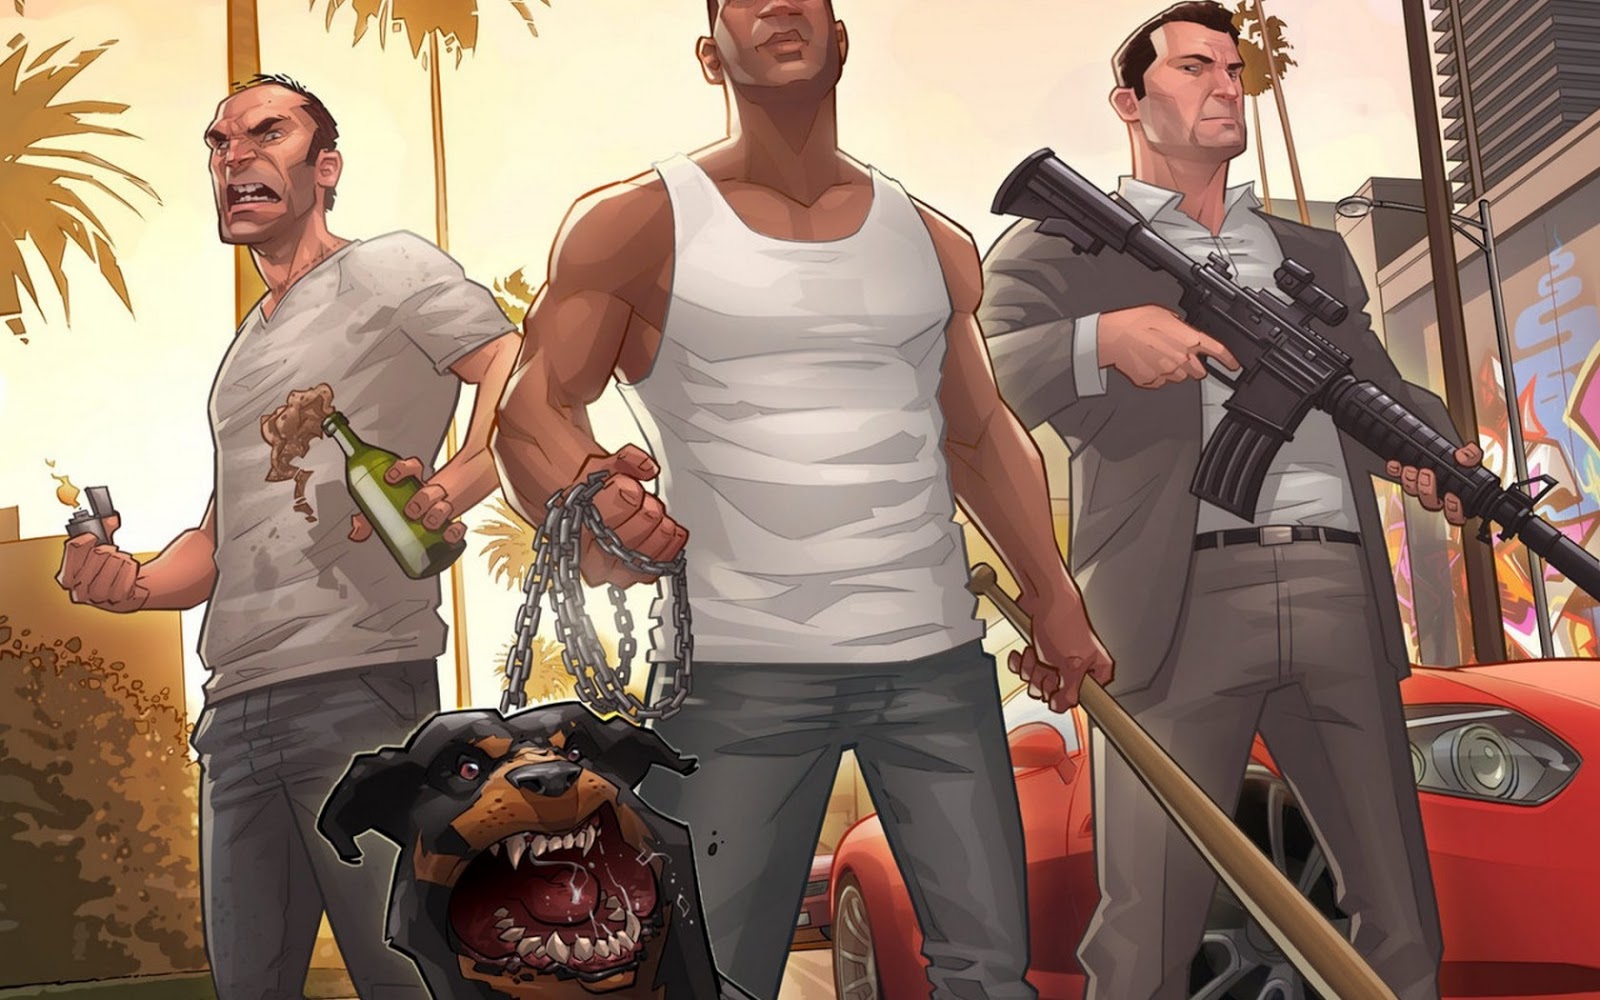 De Games Que Mais Te Deixa Interligado Wallpaper Grand Theft Auto V